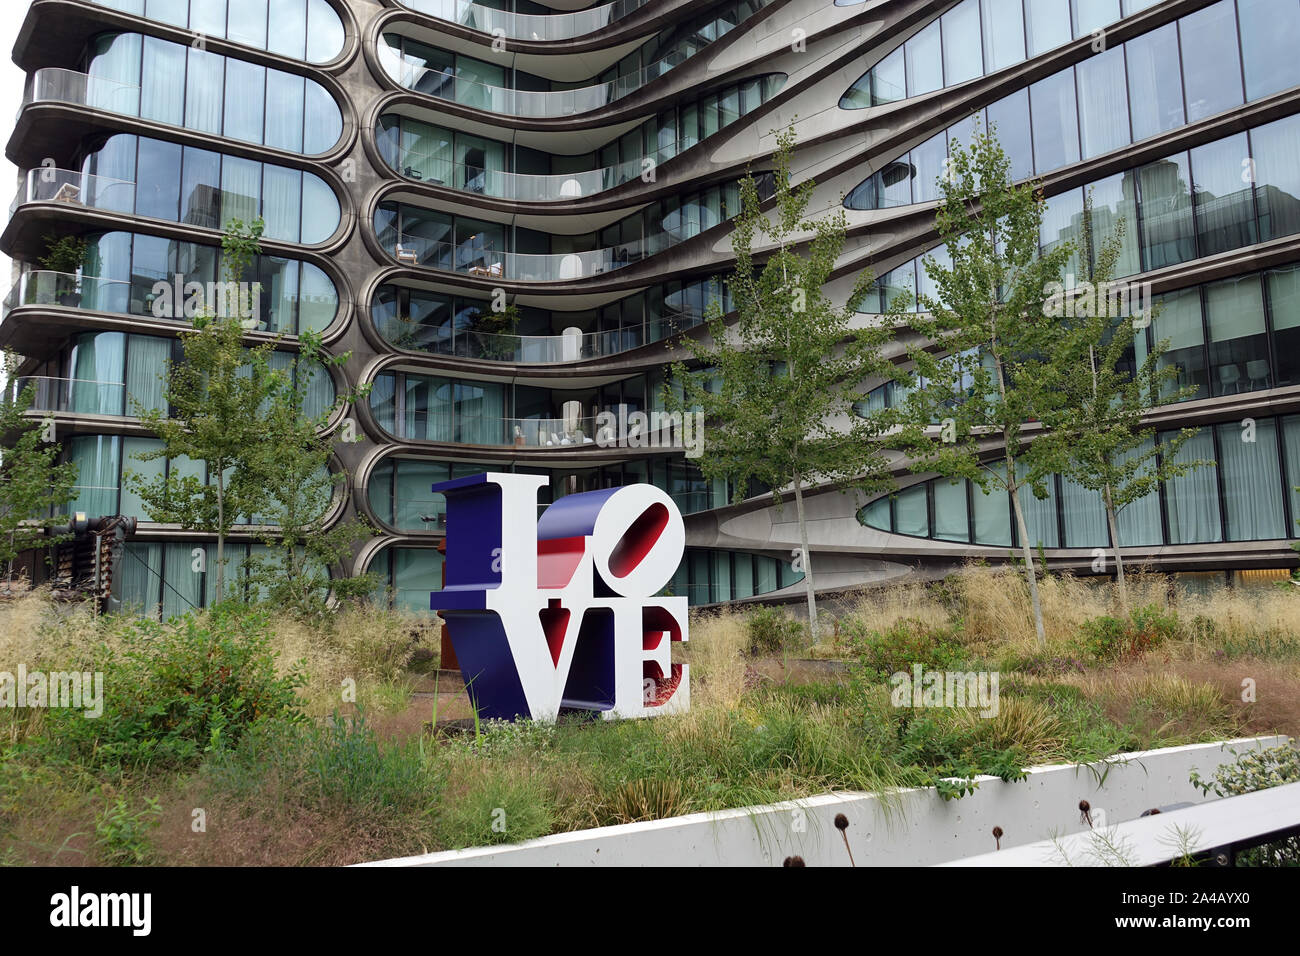 08 septembre 2019, nous, New York : un bâtiment résidentiel par star architecte Zaha Hadid, décédé en 2016, se trouve juste à côté du parc High Line. En face d'elle se dresse la célèbre 'Amour' sculpture de Robert Indiana. Le parc High Line est un conservés mais ne sont plus utilisés en viaduc ligne dans l'ouest de Manhattan. La première phase de construction a ouvert ses portes en 2009. Il est l'un des nouveaux parcs et les plus insolites à New York et déjà un spectacle à voir. Il est près de trois kilomètres de long et seulement environ 20 mètres de large. High Line est situé à 10 mètres au-dessus de la route entre les 10e et 11e avenues et va Banque D'Images